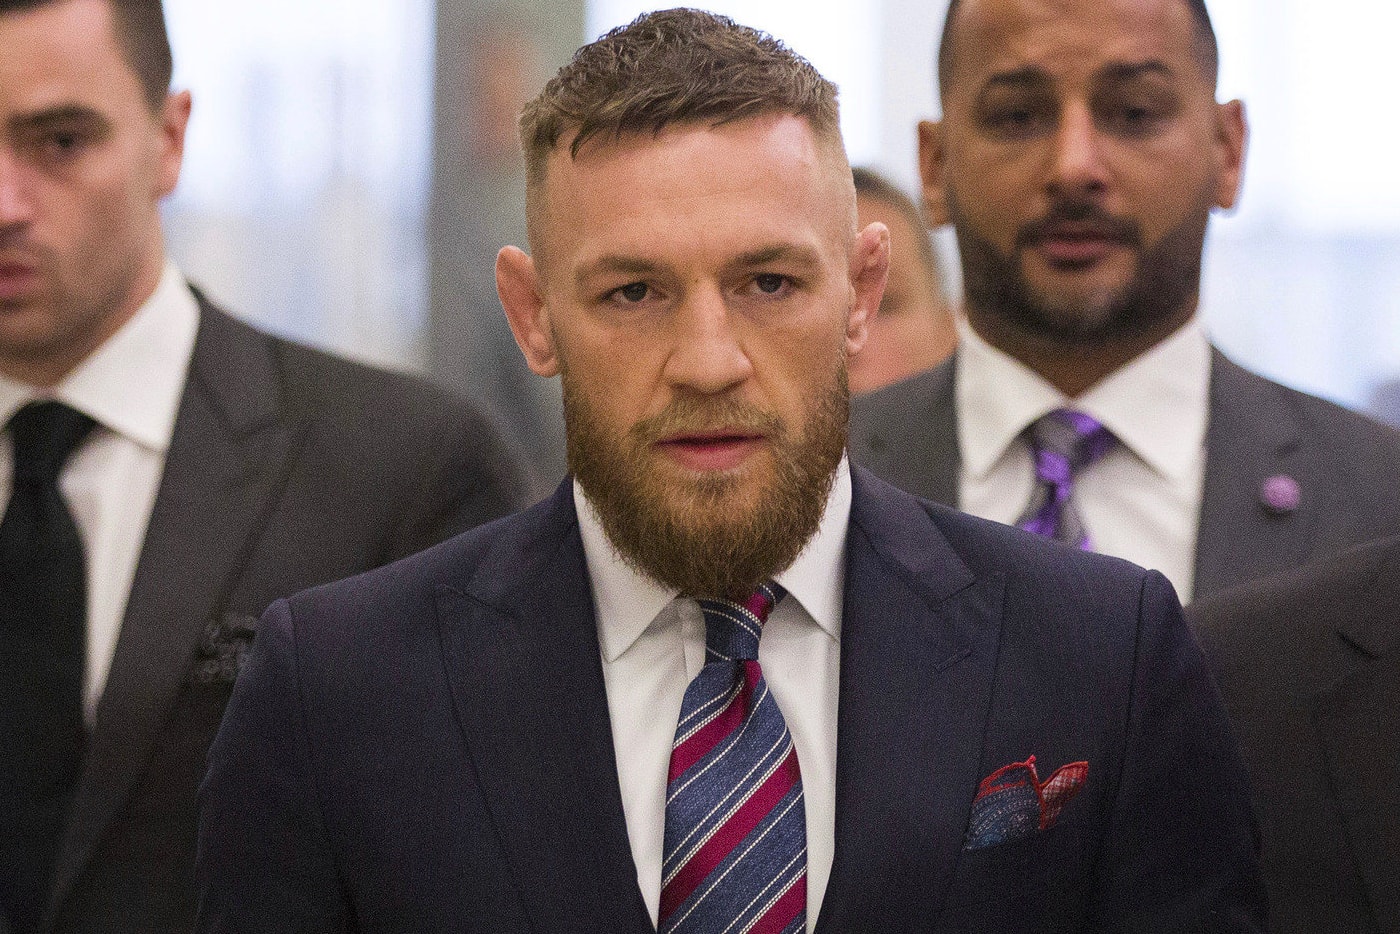 Conor McGregor UFC 223 Incident Guilty Plea Barclays Center Brooklyn khabib nurmagomedov MMA Bus Attack